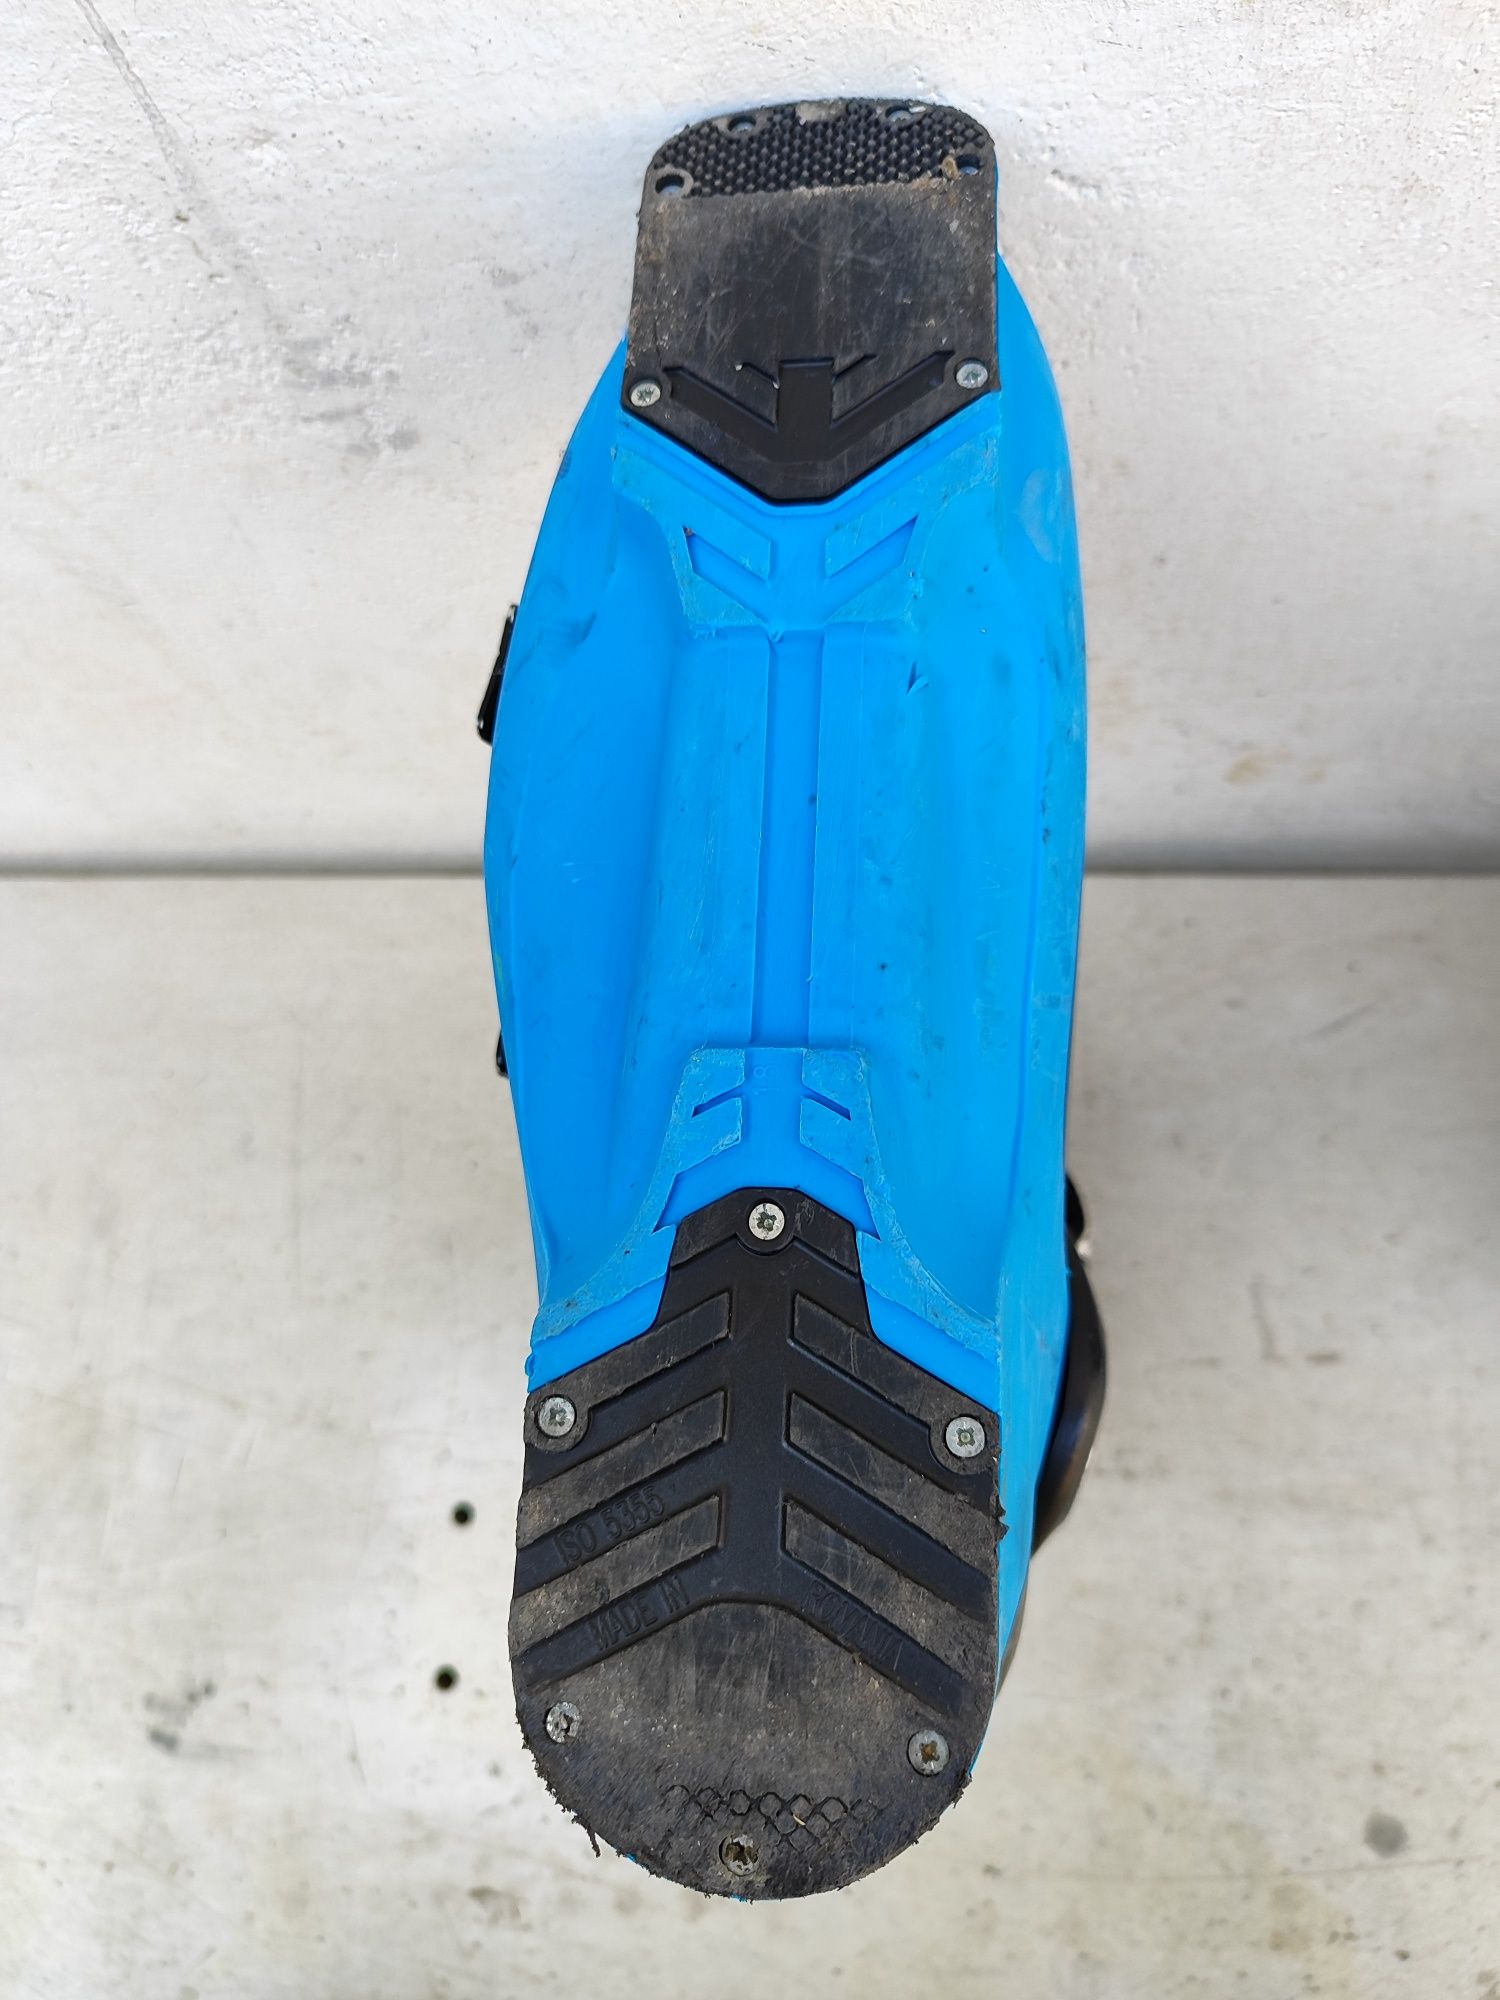 Buty narciarskie Salomon X-MAX 120 rozmiar 44 28.5cm